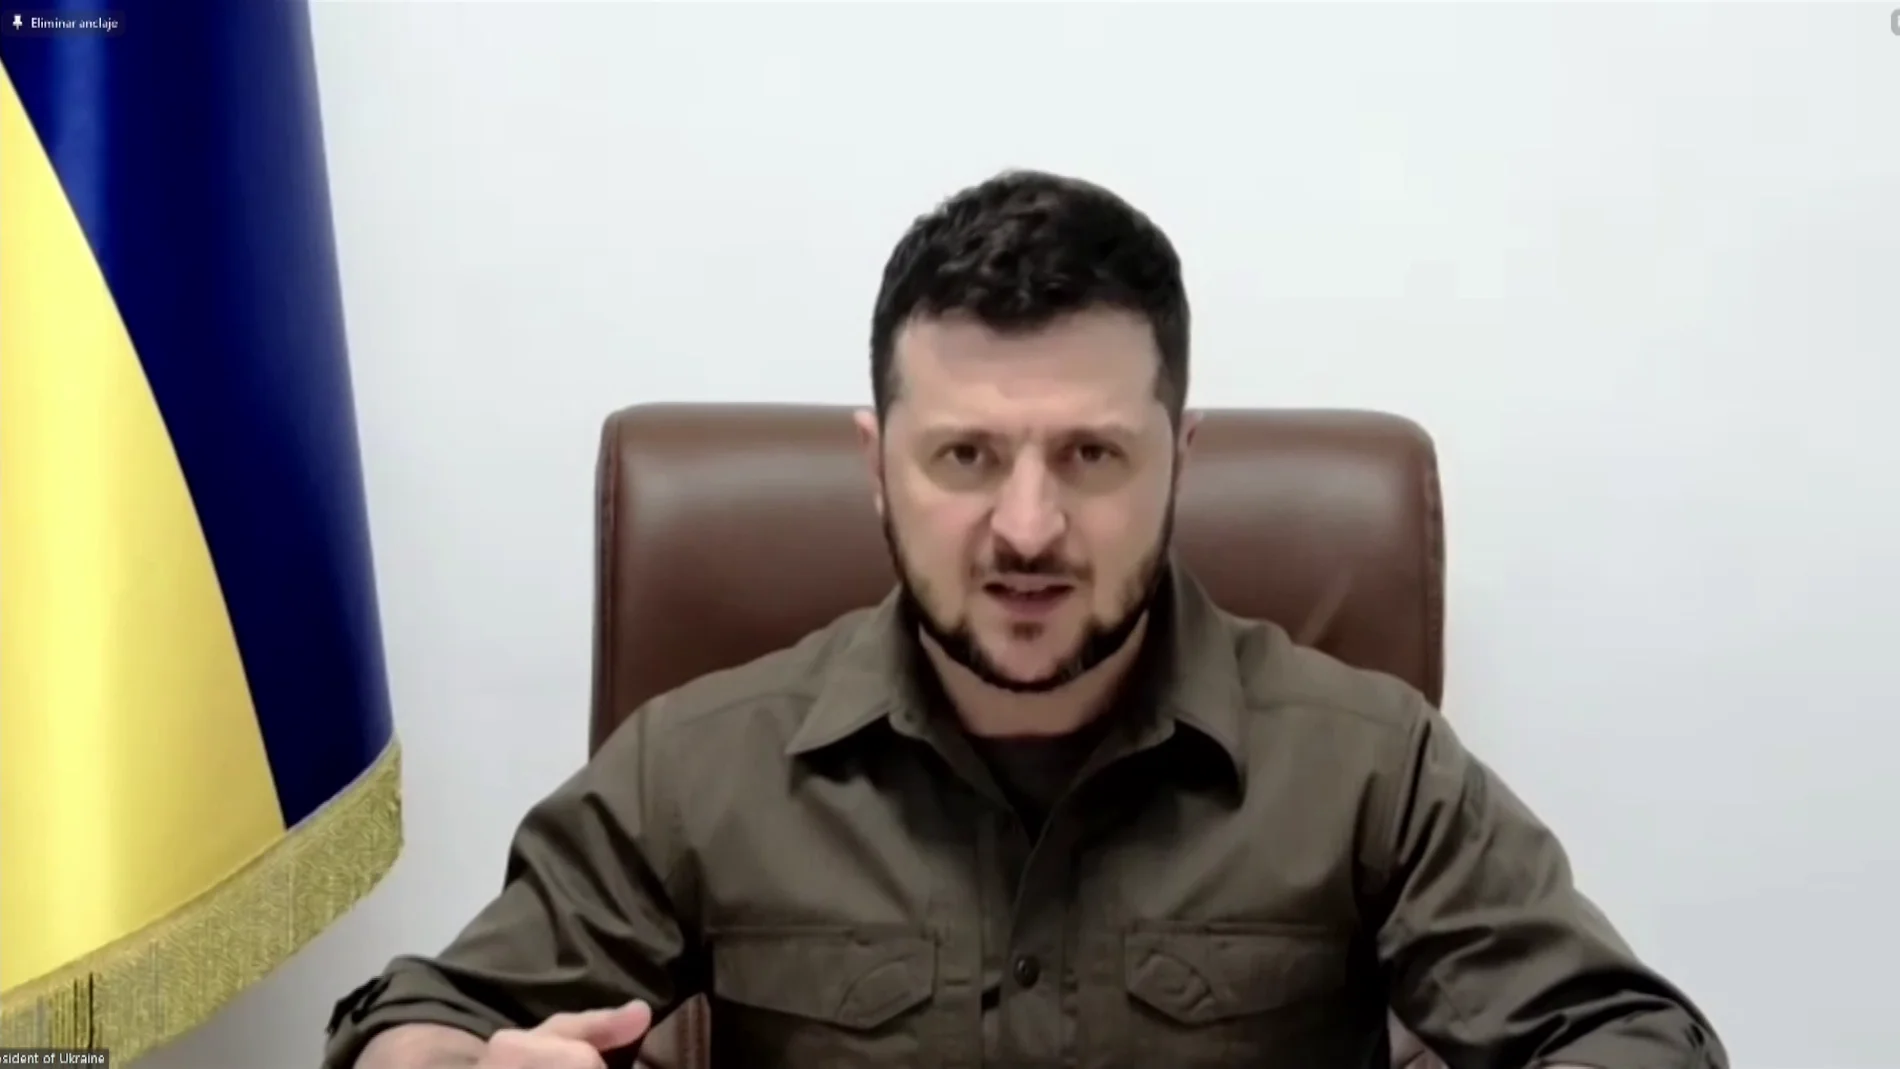 DIRECTO: Comparecencia de Volodímir Zelenski hoy en el Congreso de los Diputados, vídeo en streaming